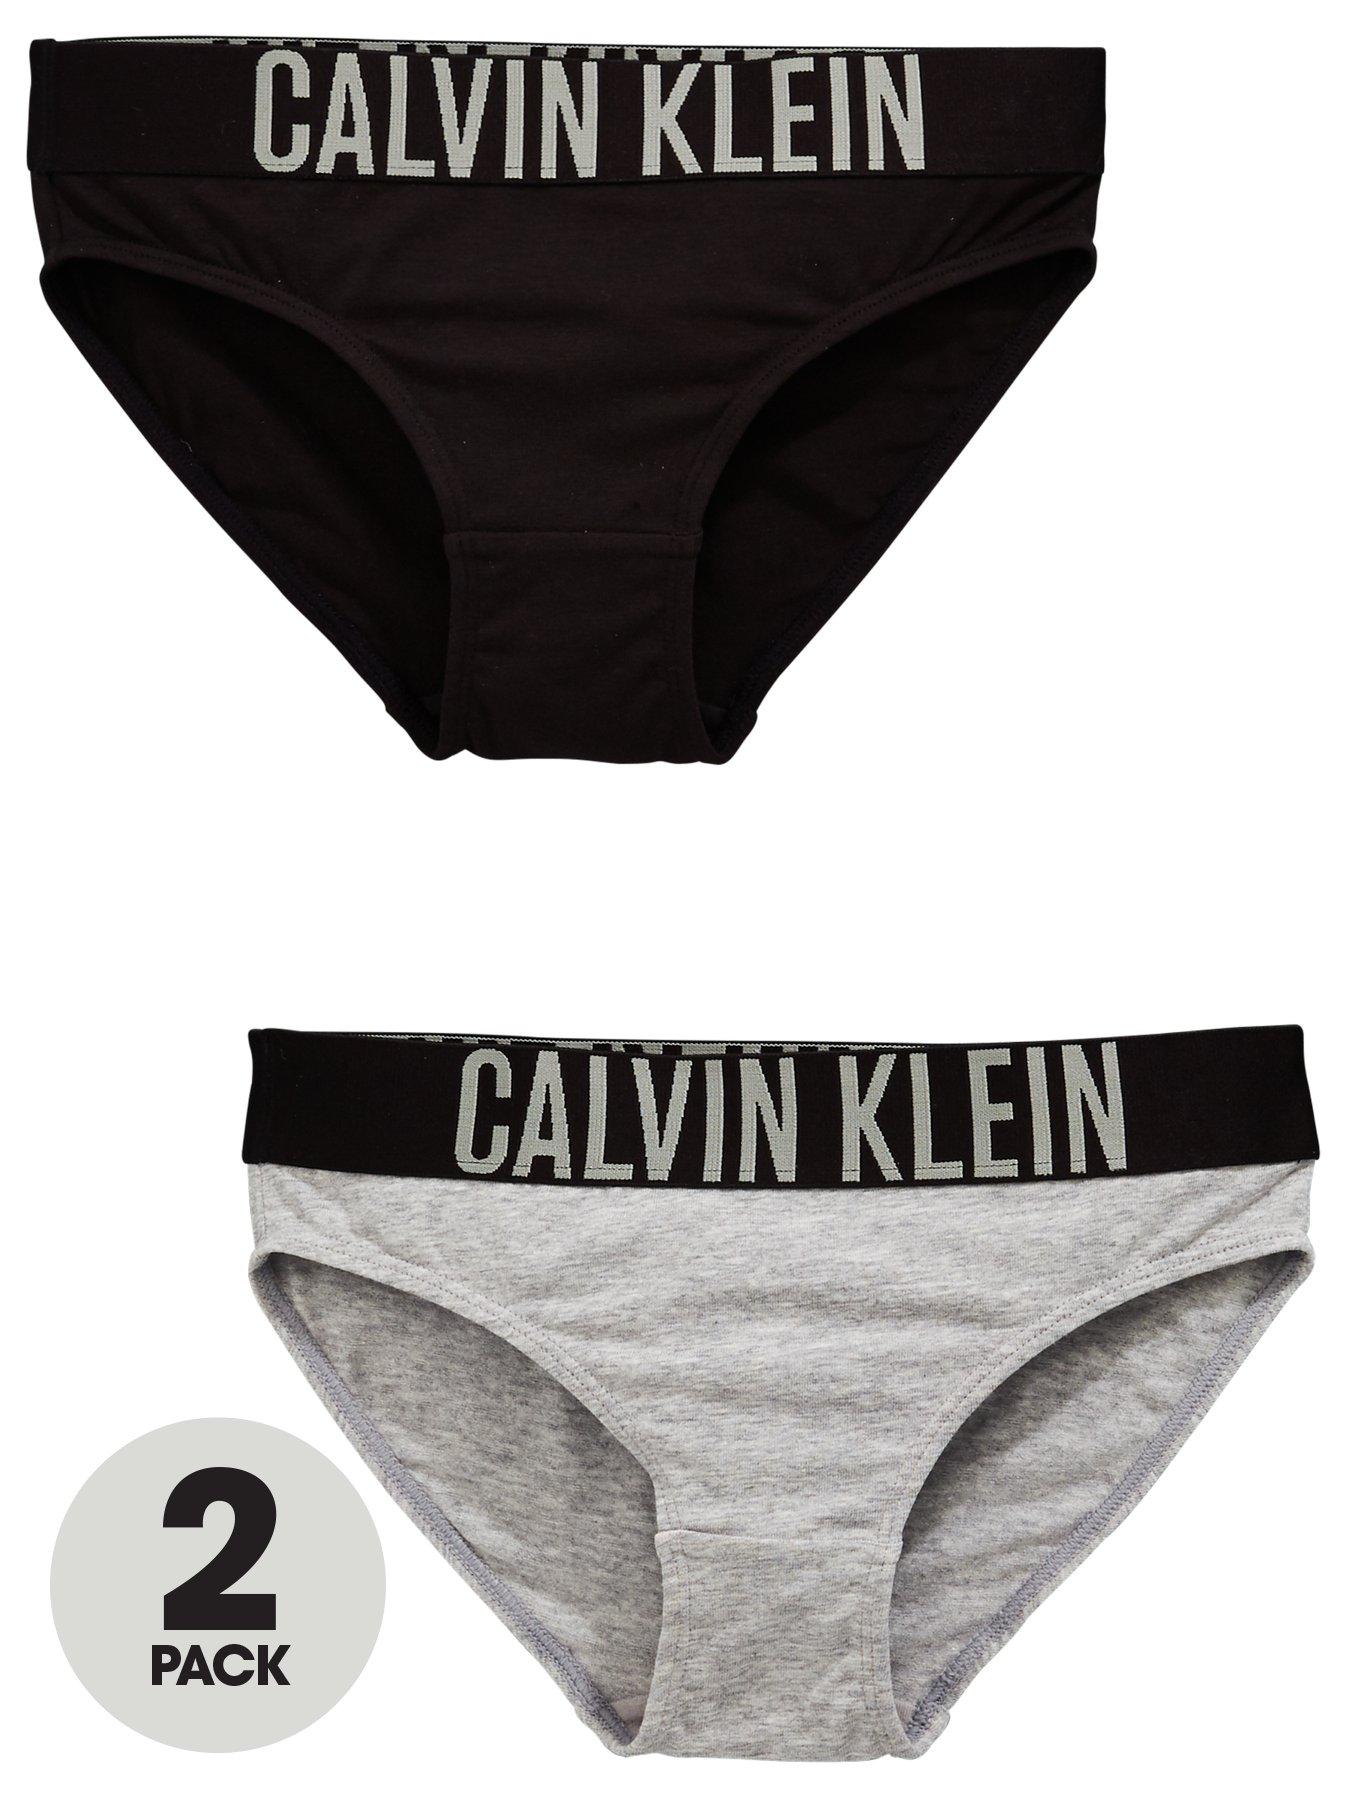 calvin klein underwear uk